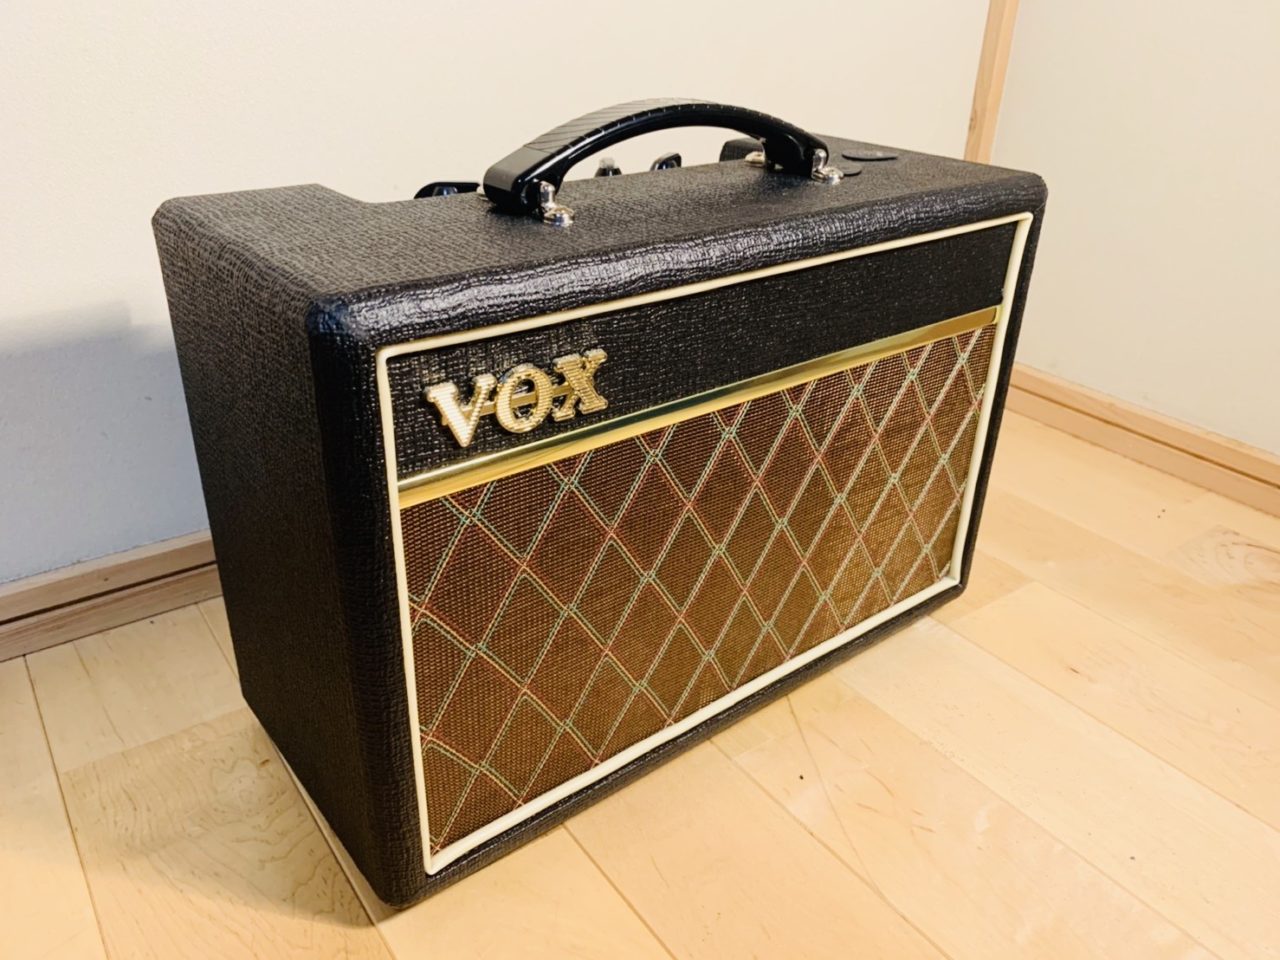 レビュー】VOX Pathfinder 10は自宅でのギター練習に最適のアンプだ。 | ギター情報サイト【ギターハック】